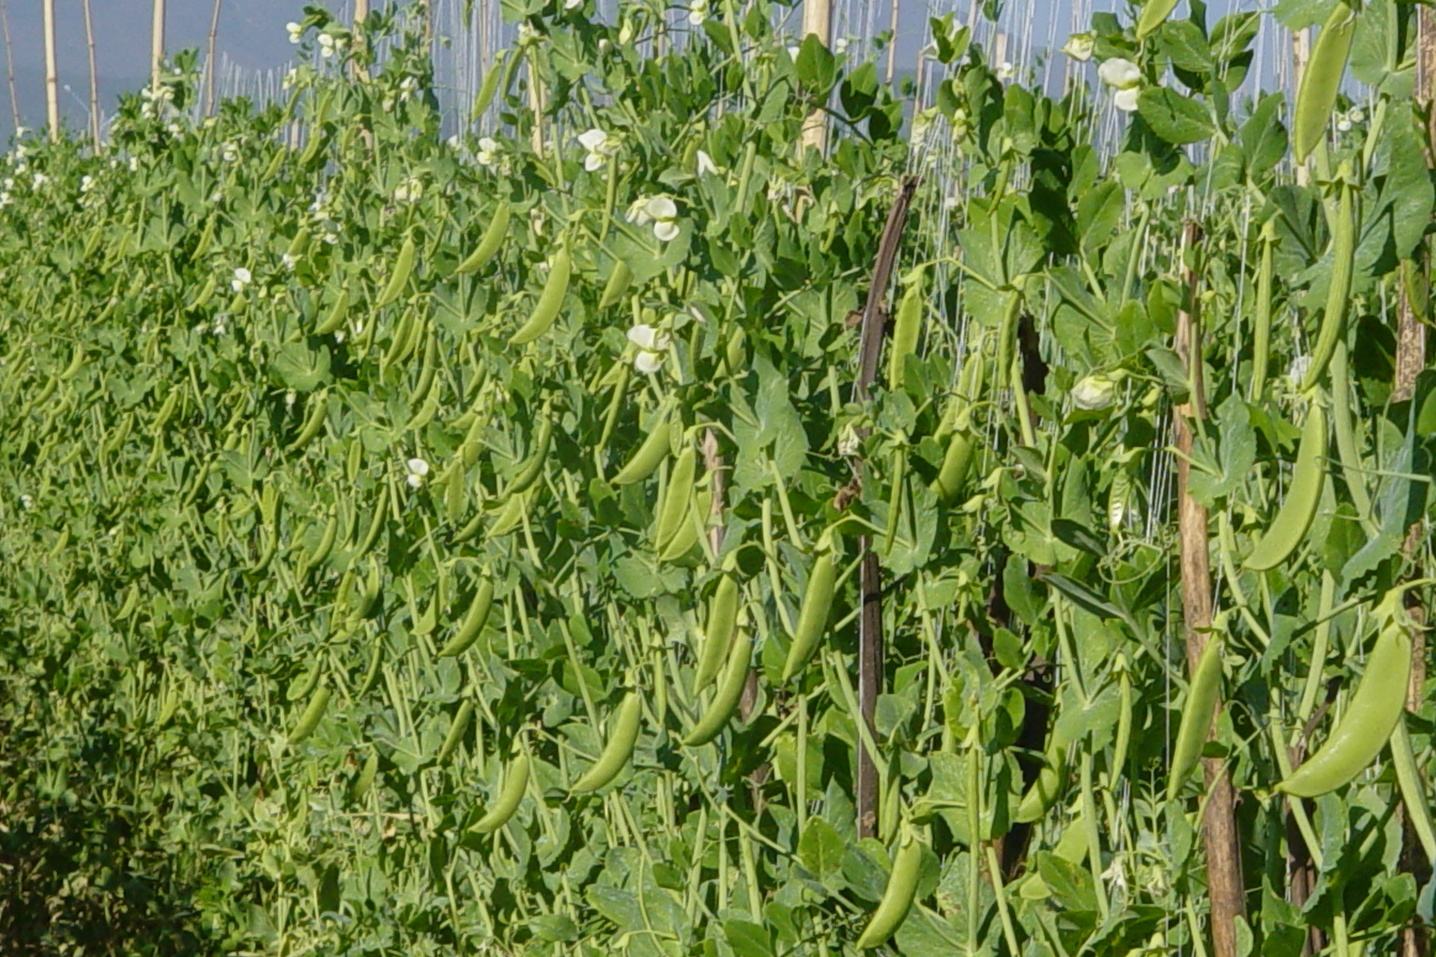 种植荷兰豆时,想要提高品质和产量,这4个注意事项至关重要!